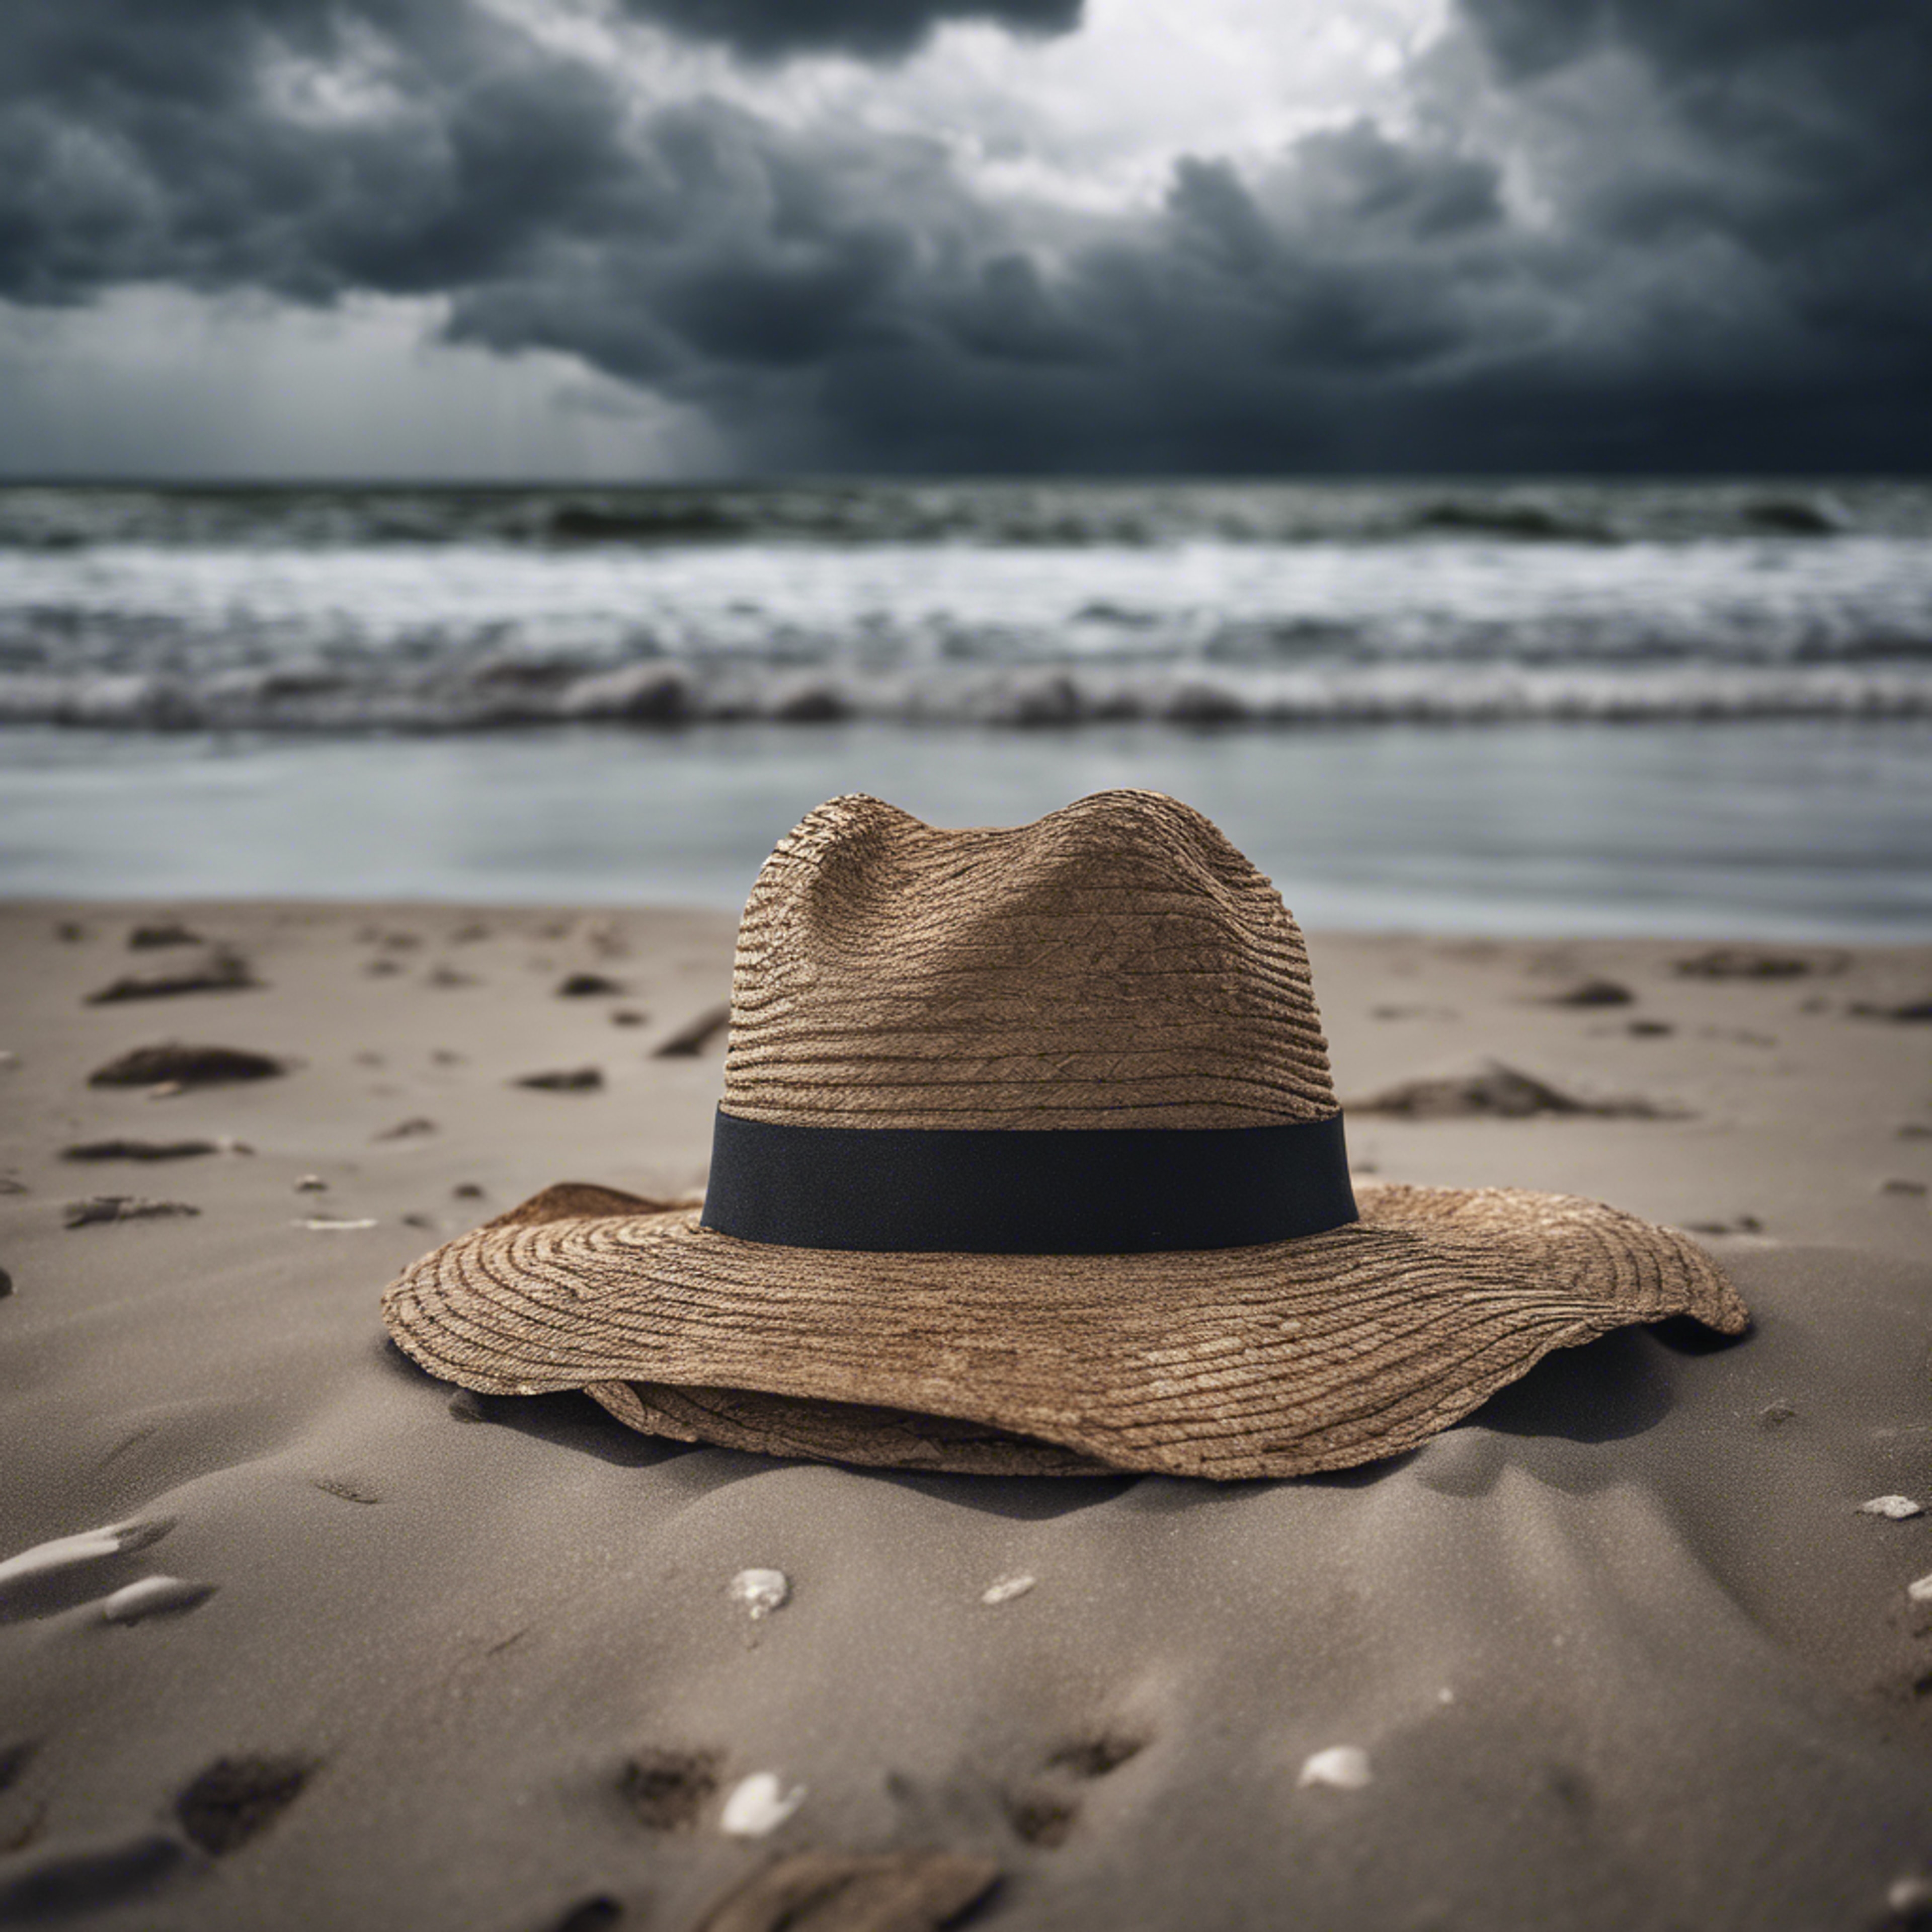 A single, forsaken hat blowing across a desolate beach under a stormy sky. Fondo de pantalla[22c522374a7d402da3d5]